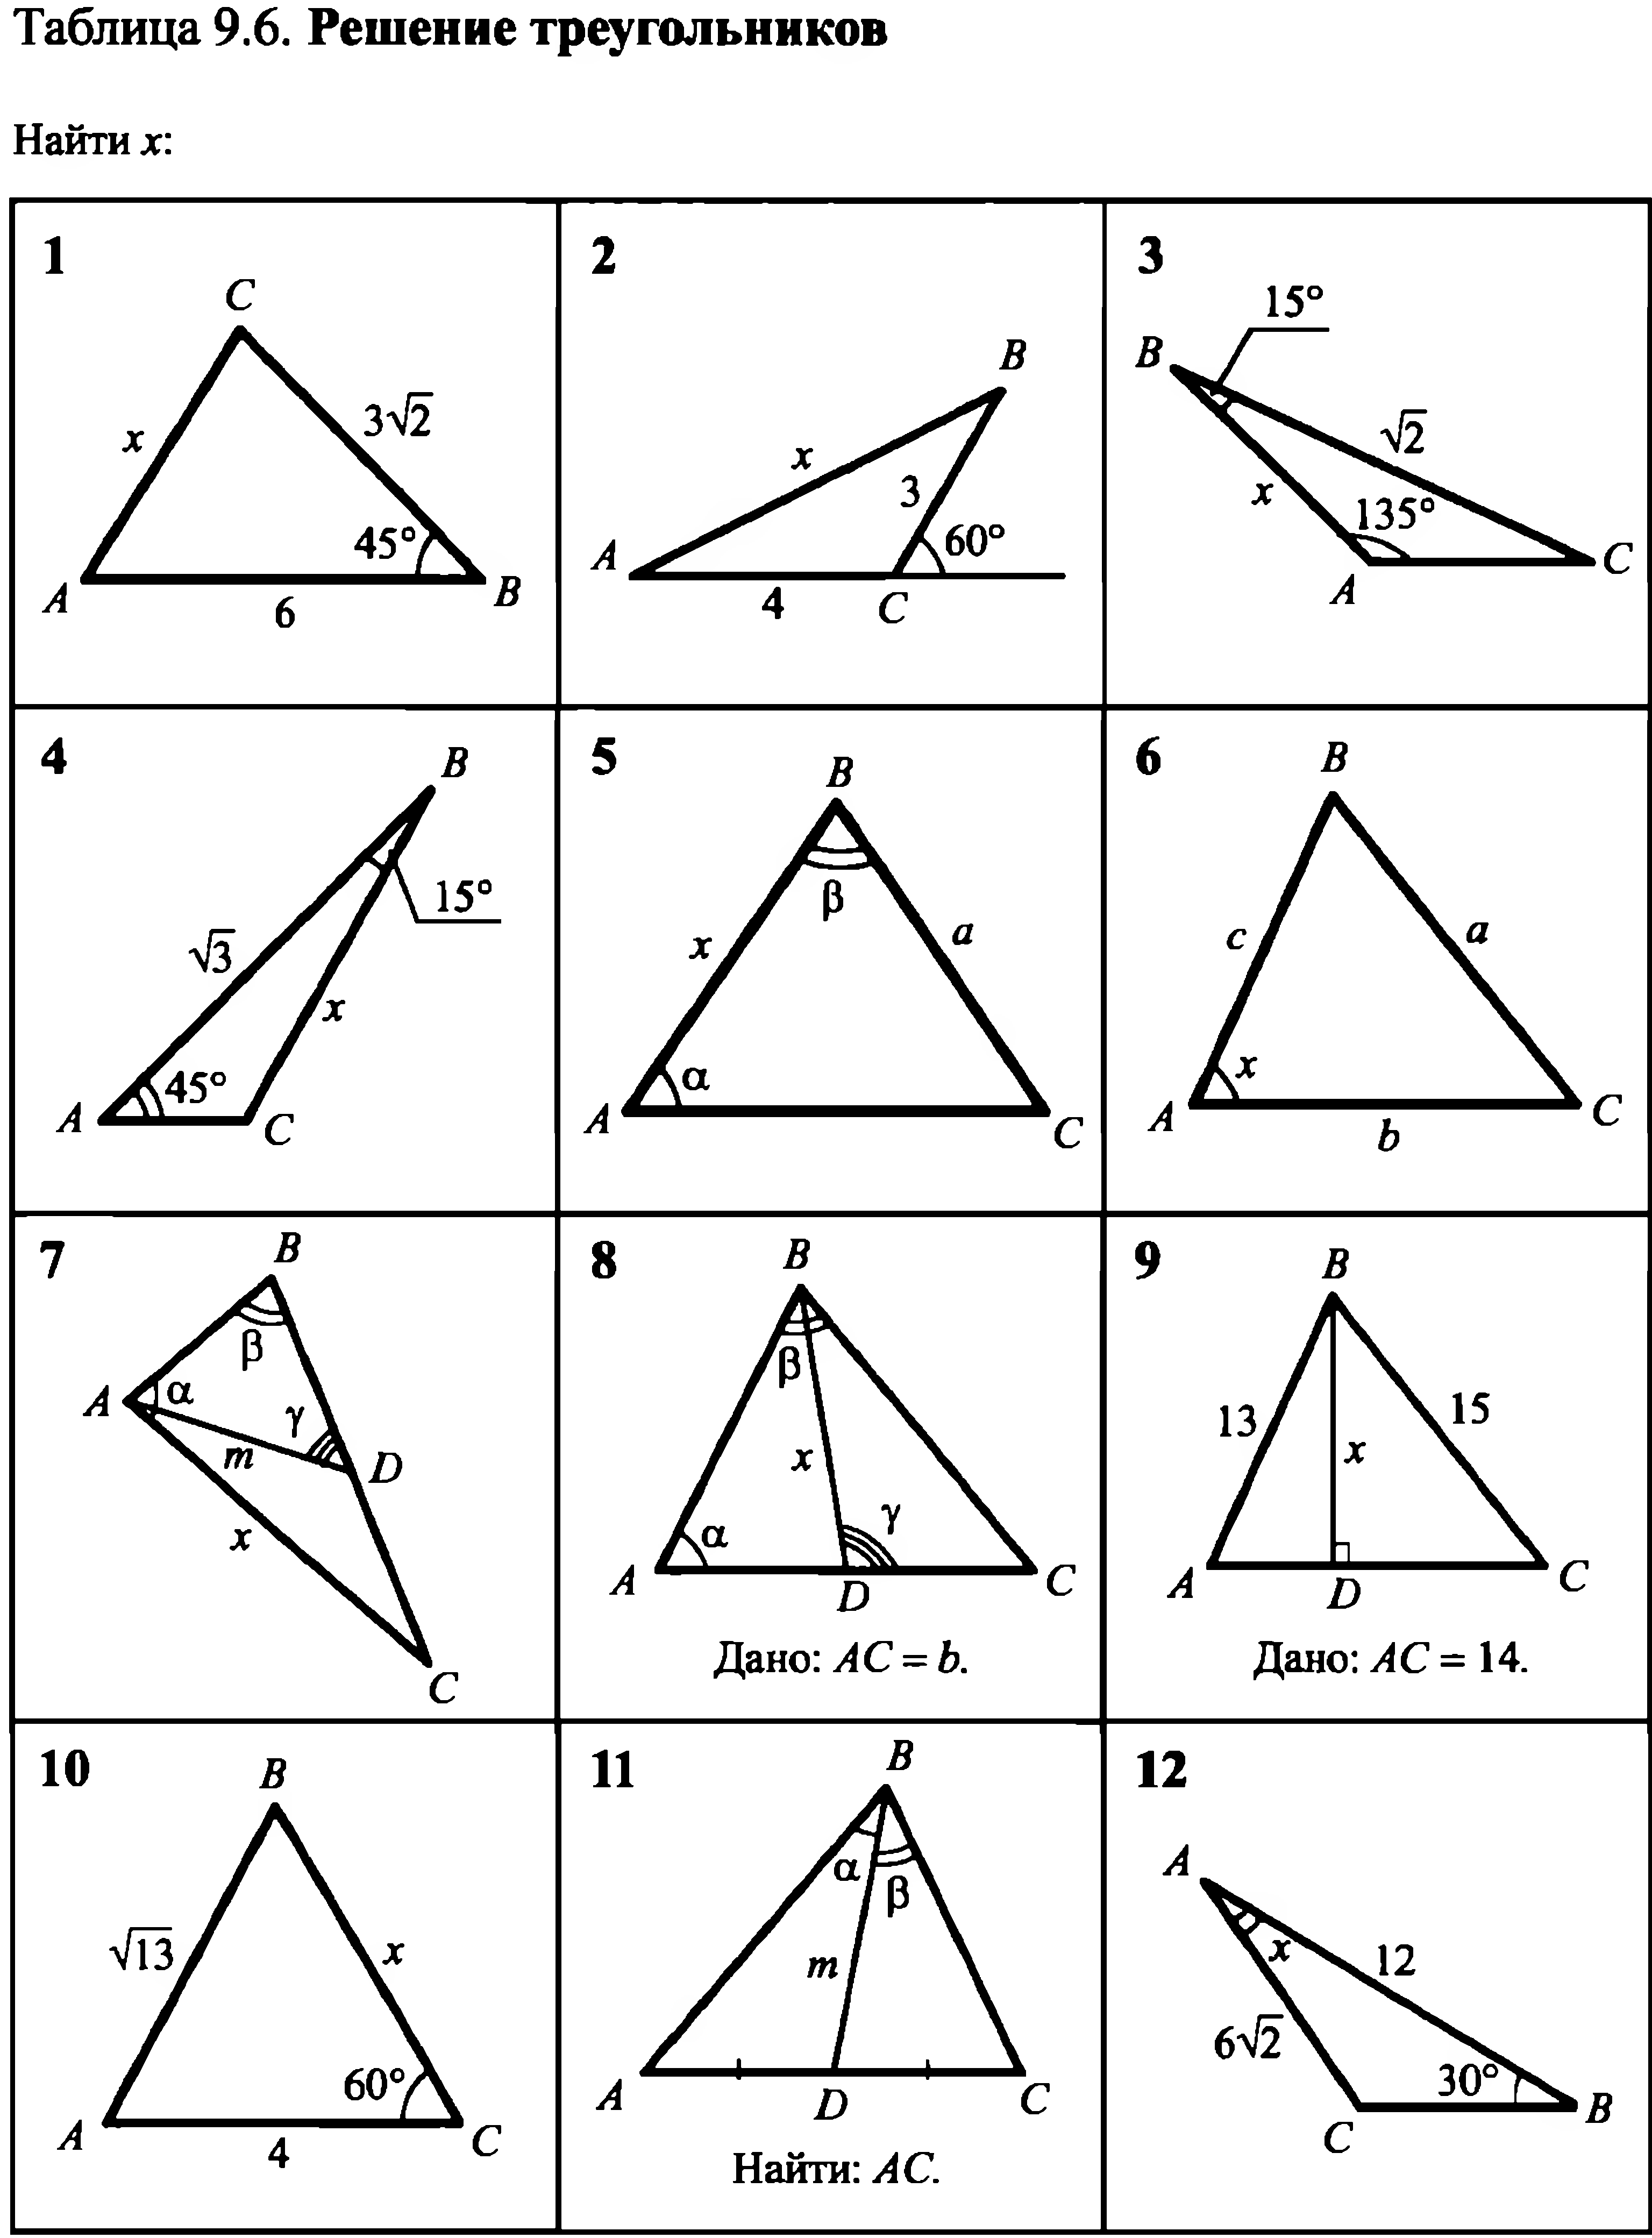 Решение прямоугольных треугольников 8 класс самостоятельная работа. Площадь треугольника задачи на готовых чертежах 8 класс Атанасян. Площадь треугольника задачи на готовых чертежах 8 класс. Задачи на прямоугольный треугольник 7 класс по готовым чертежам. Площадь треугольника задачи на готовых чертежах.